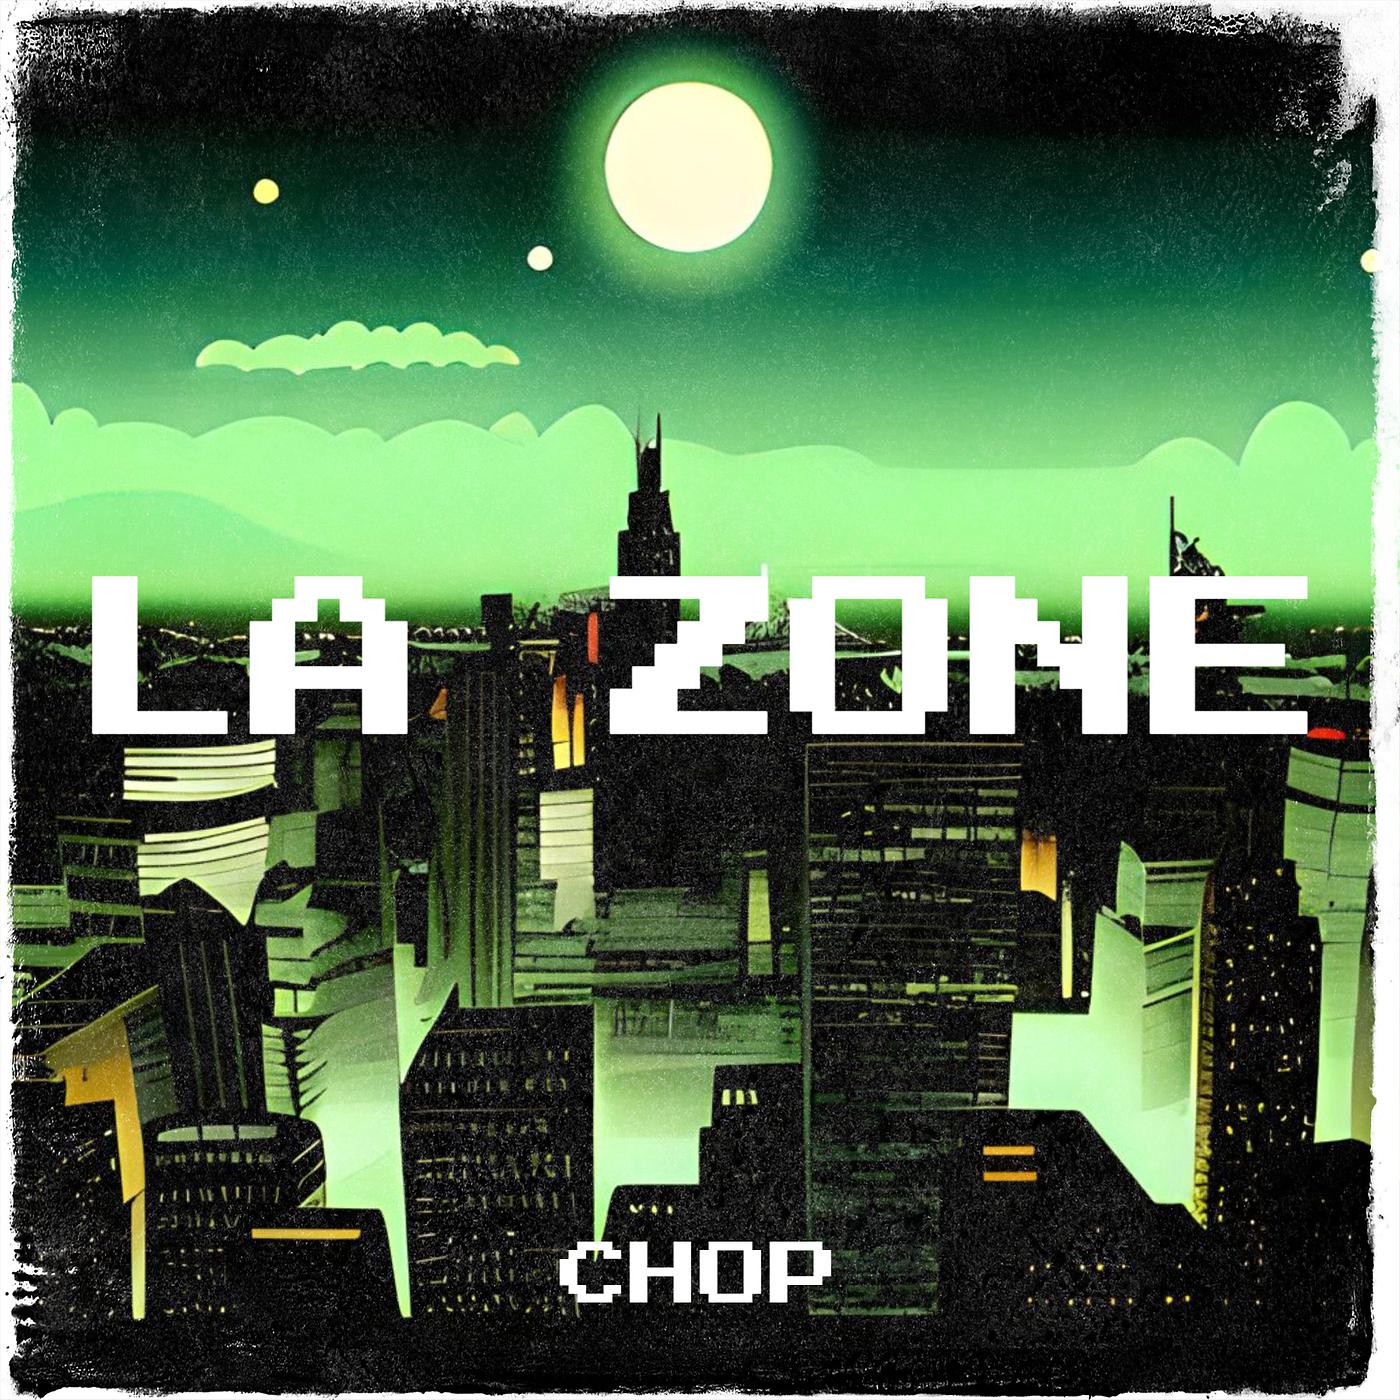 Постер альбома La Zone